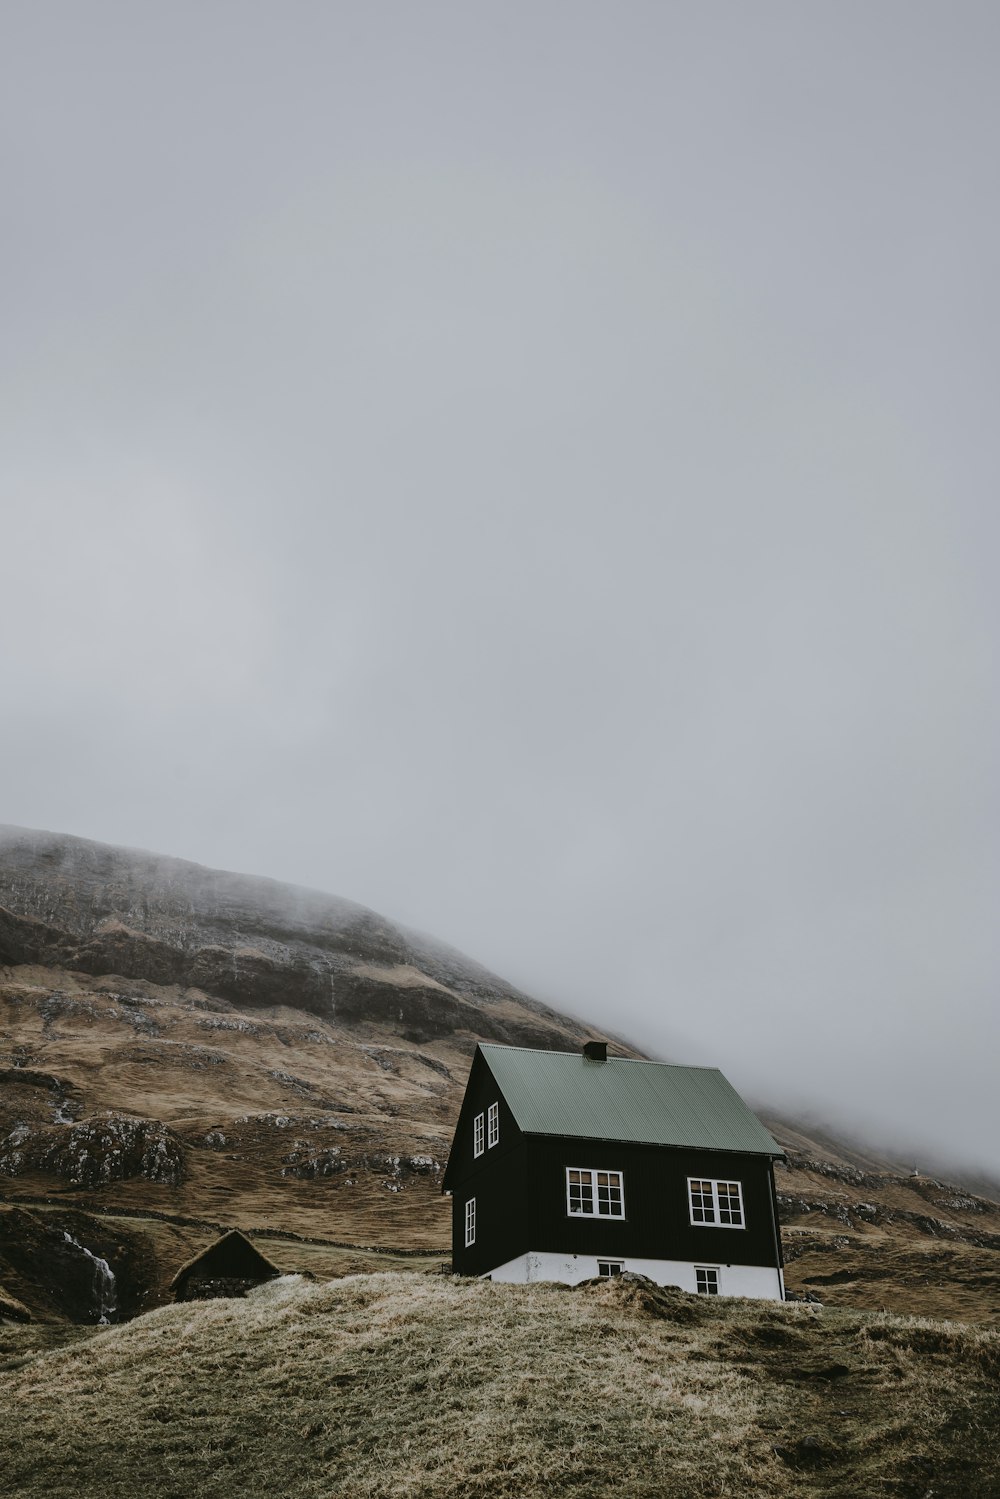 Casa de madeira preta e branca no topo da colina